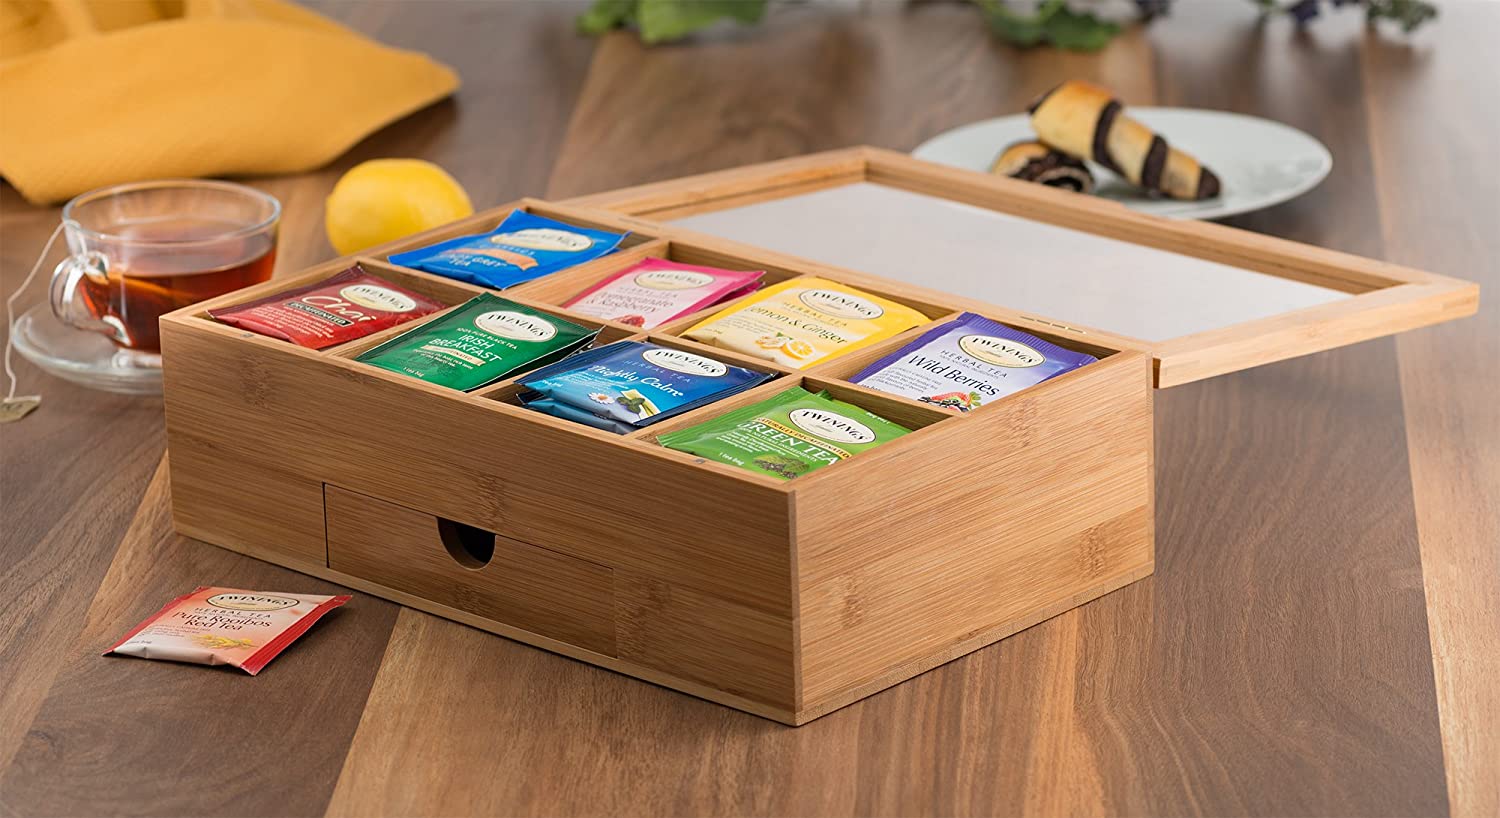 tea box transparent lid bamboo acrylic –